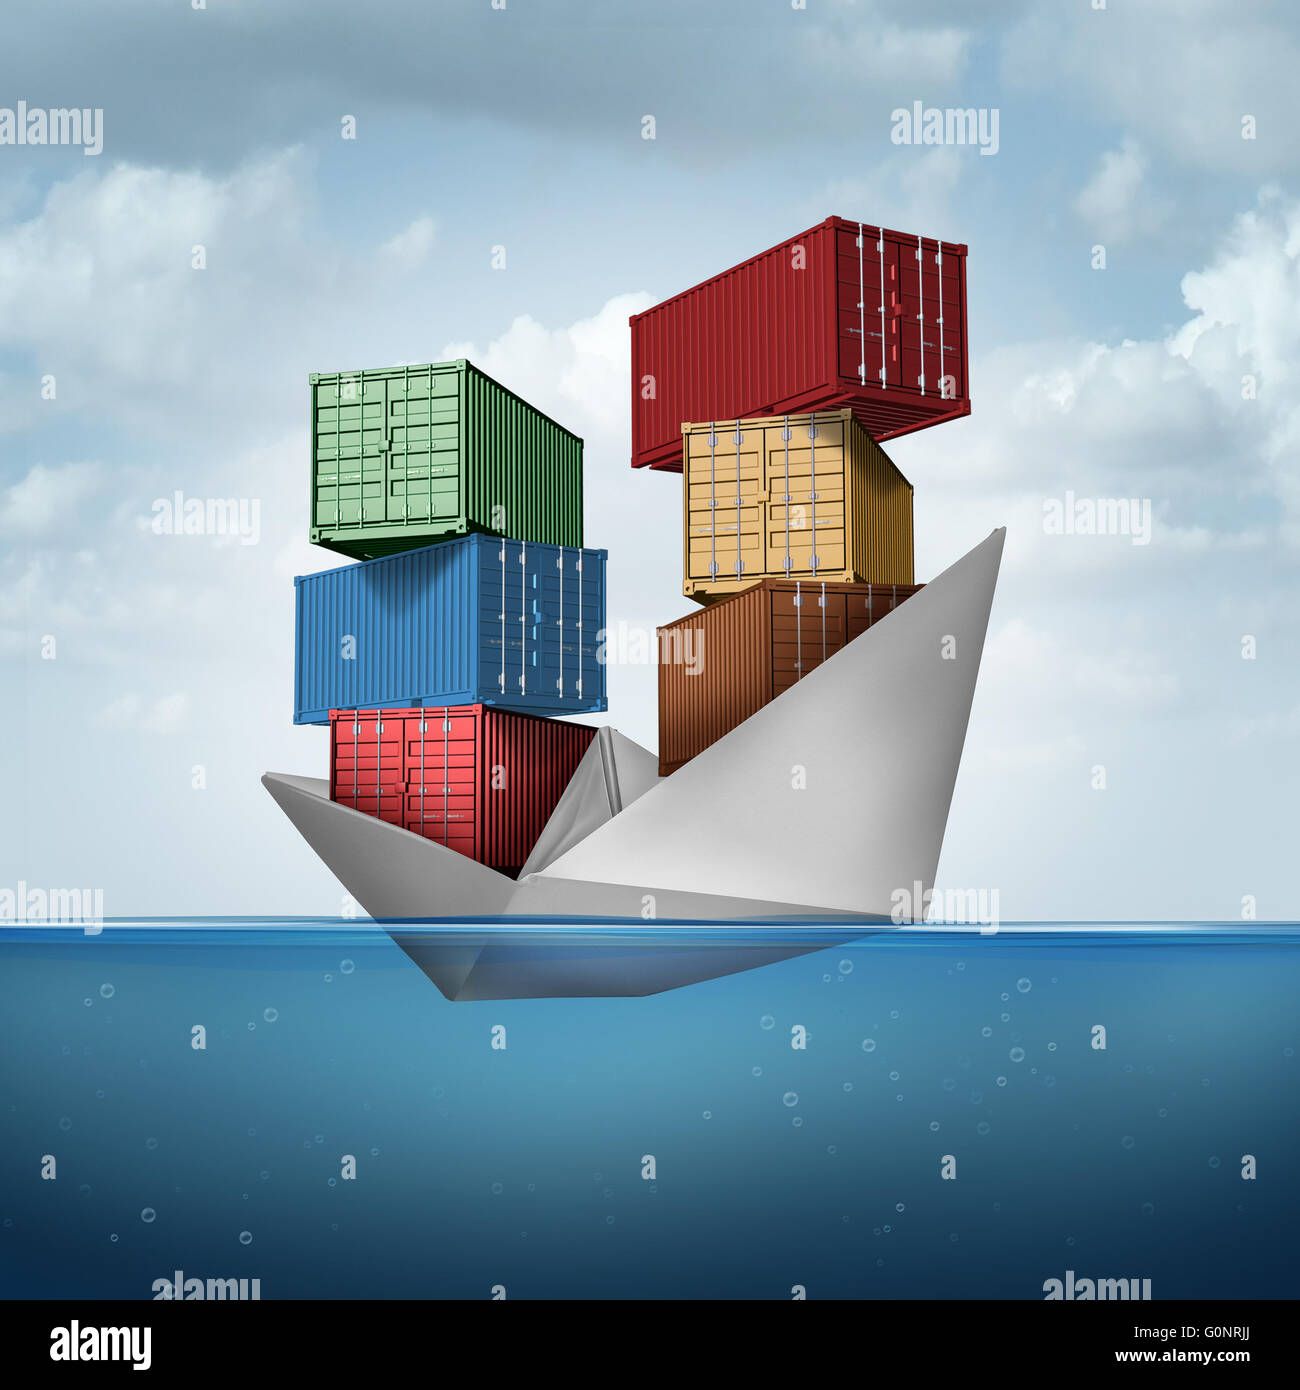 Ocean Cargo Schiff als Container Boot transportieren schwere Fracht als ein Papier-Schiff mit Containern als Handel und export Konzept mit 3D Abbildung Elemente. Stockfoto